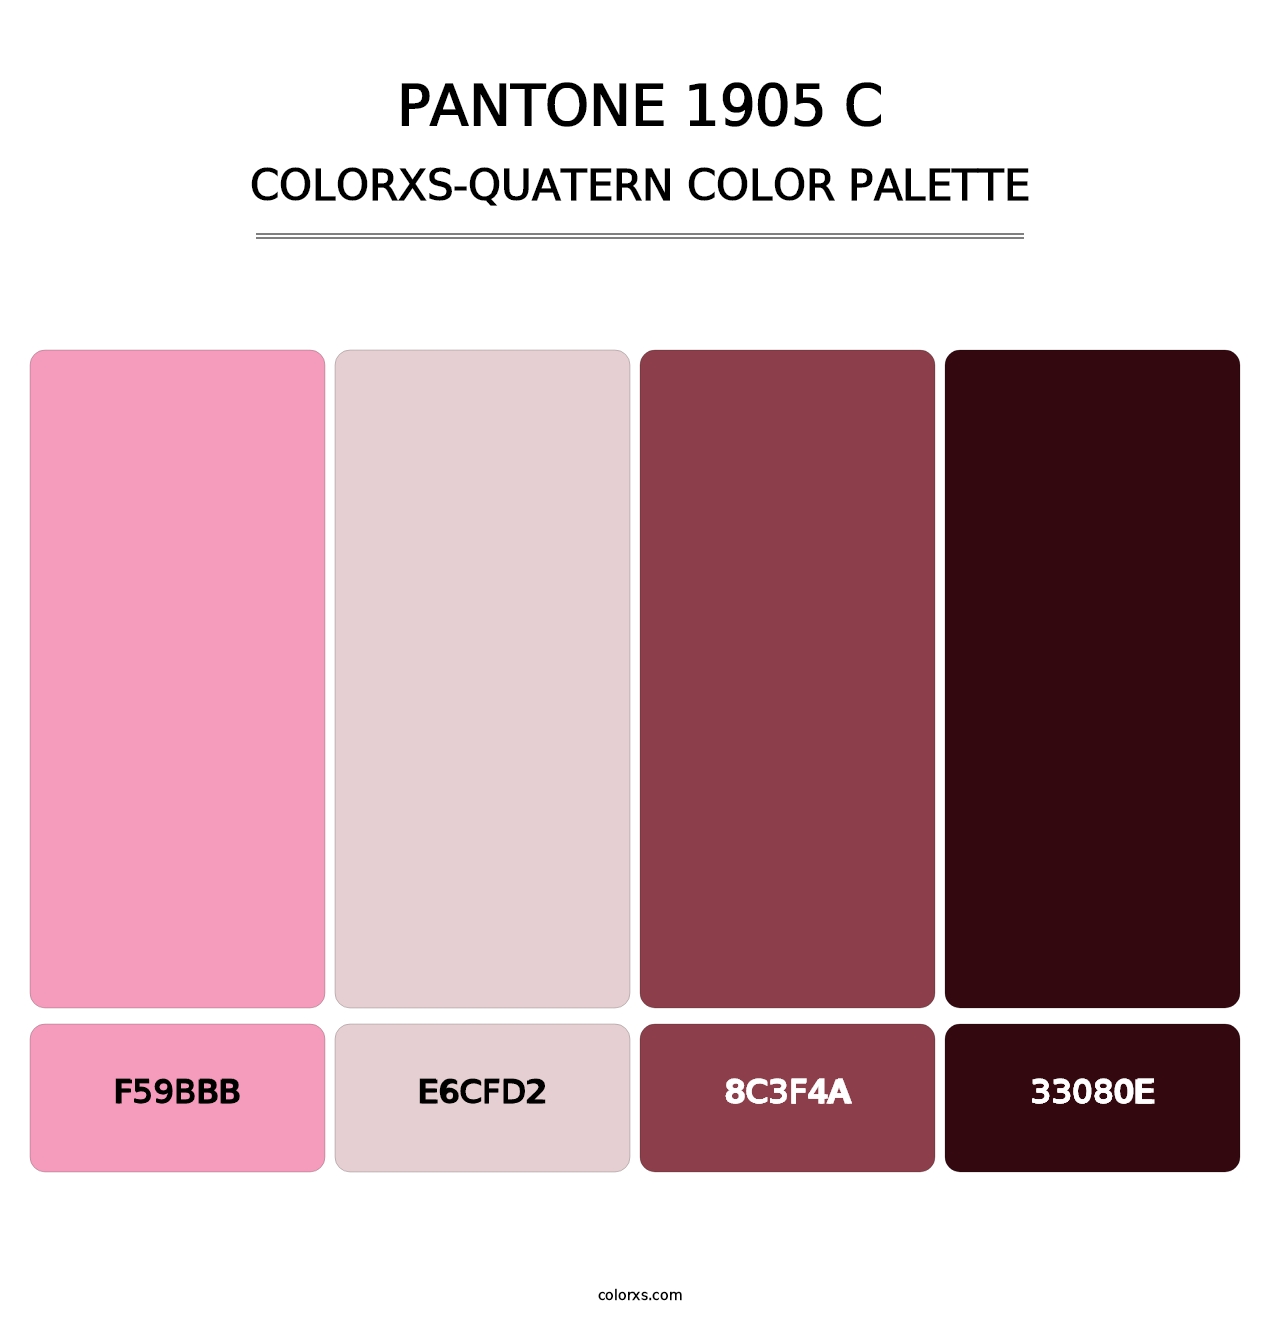 PANTONE 1905 C - Colorxs Quatern Palette